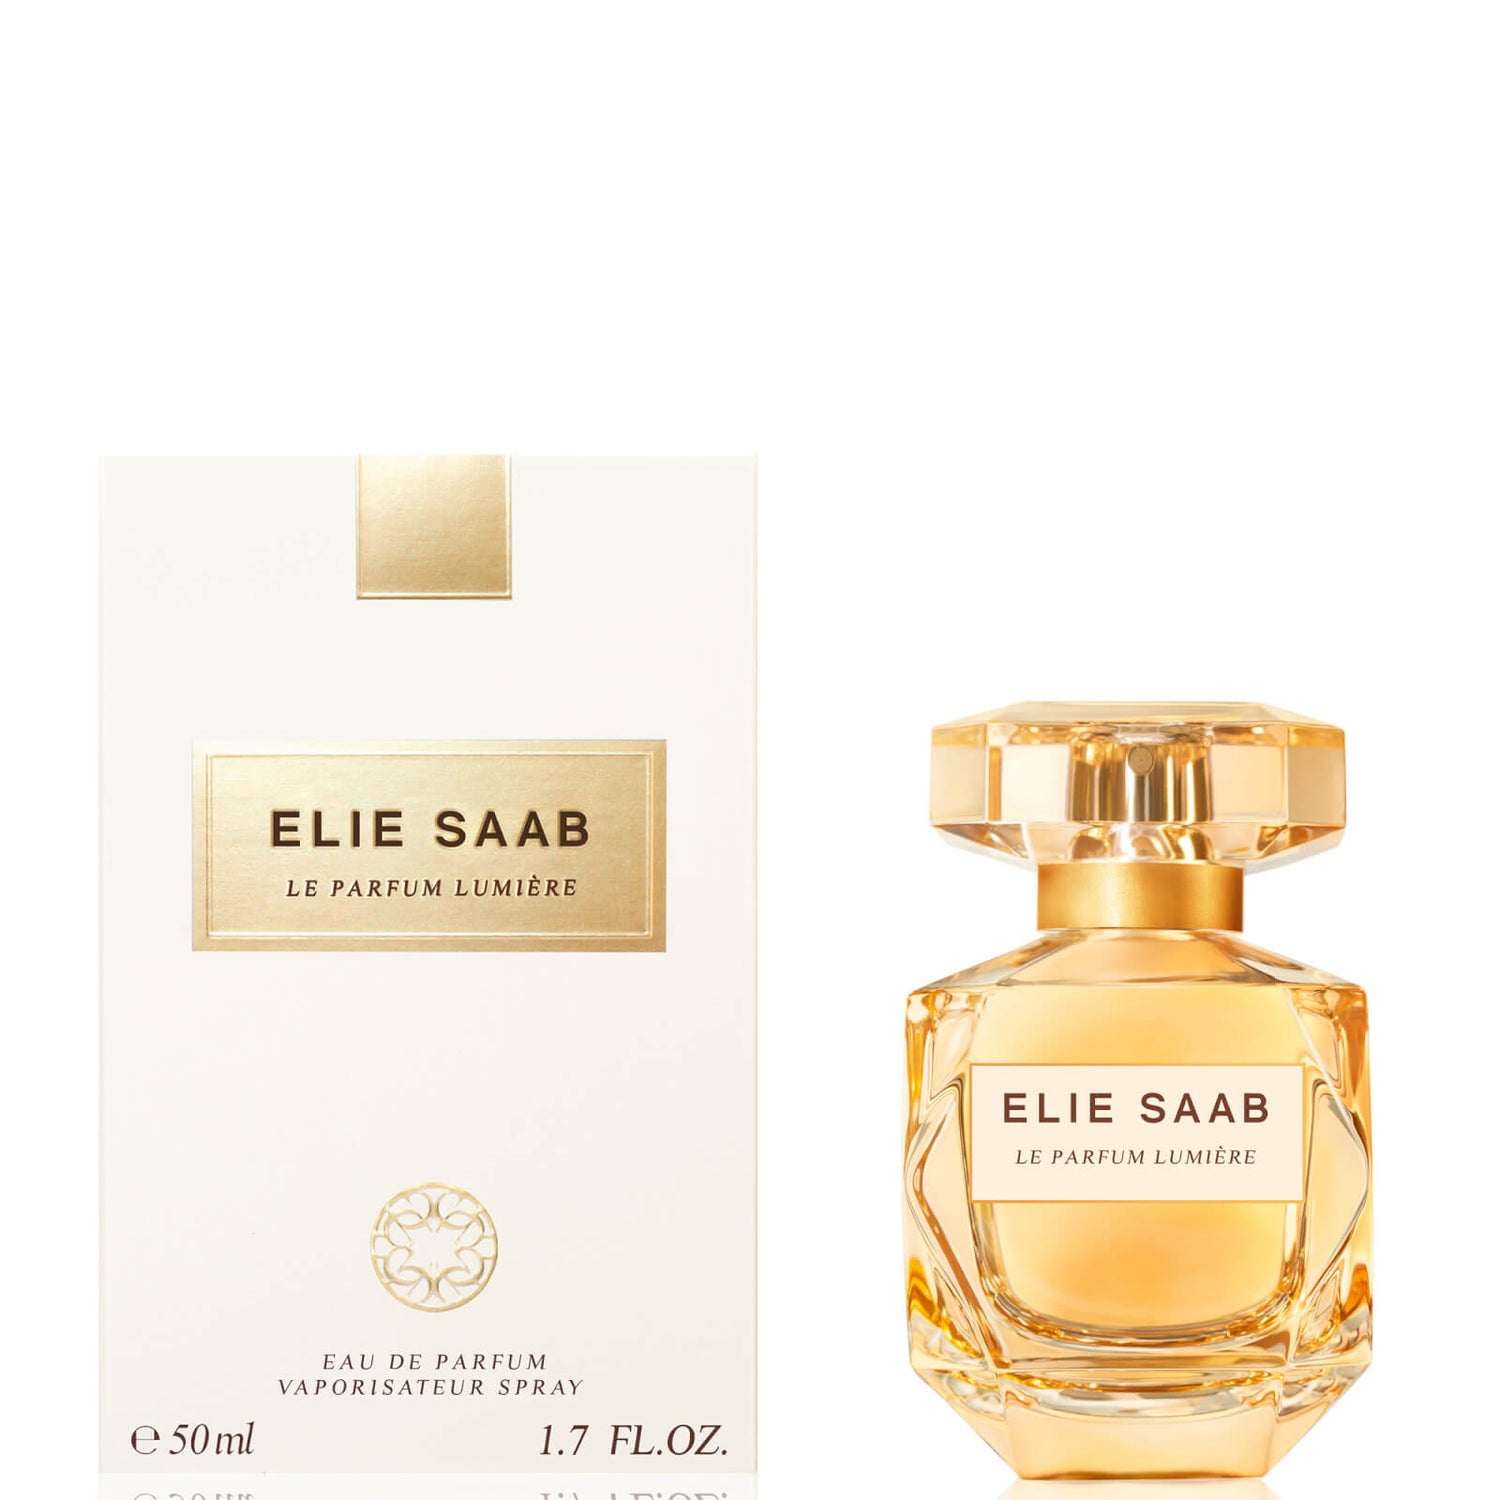 Elie Saab Le Parfum Lumiere Eau Parfum 50ml | Free US Shipping | lookfantastic